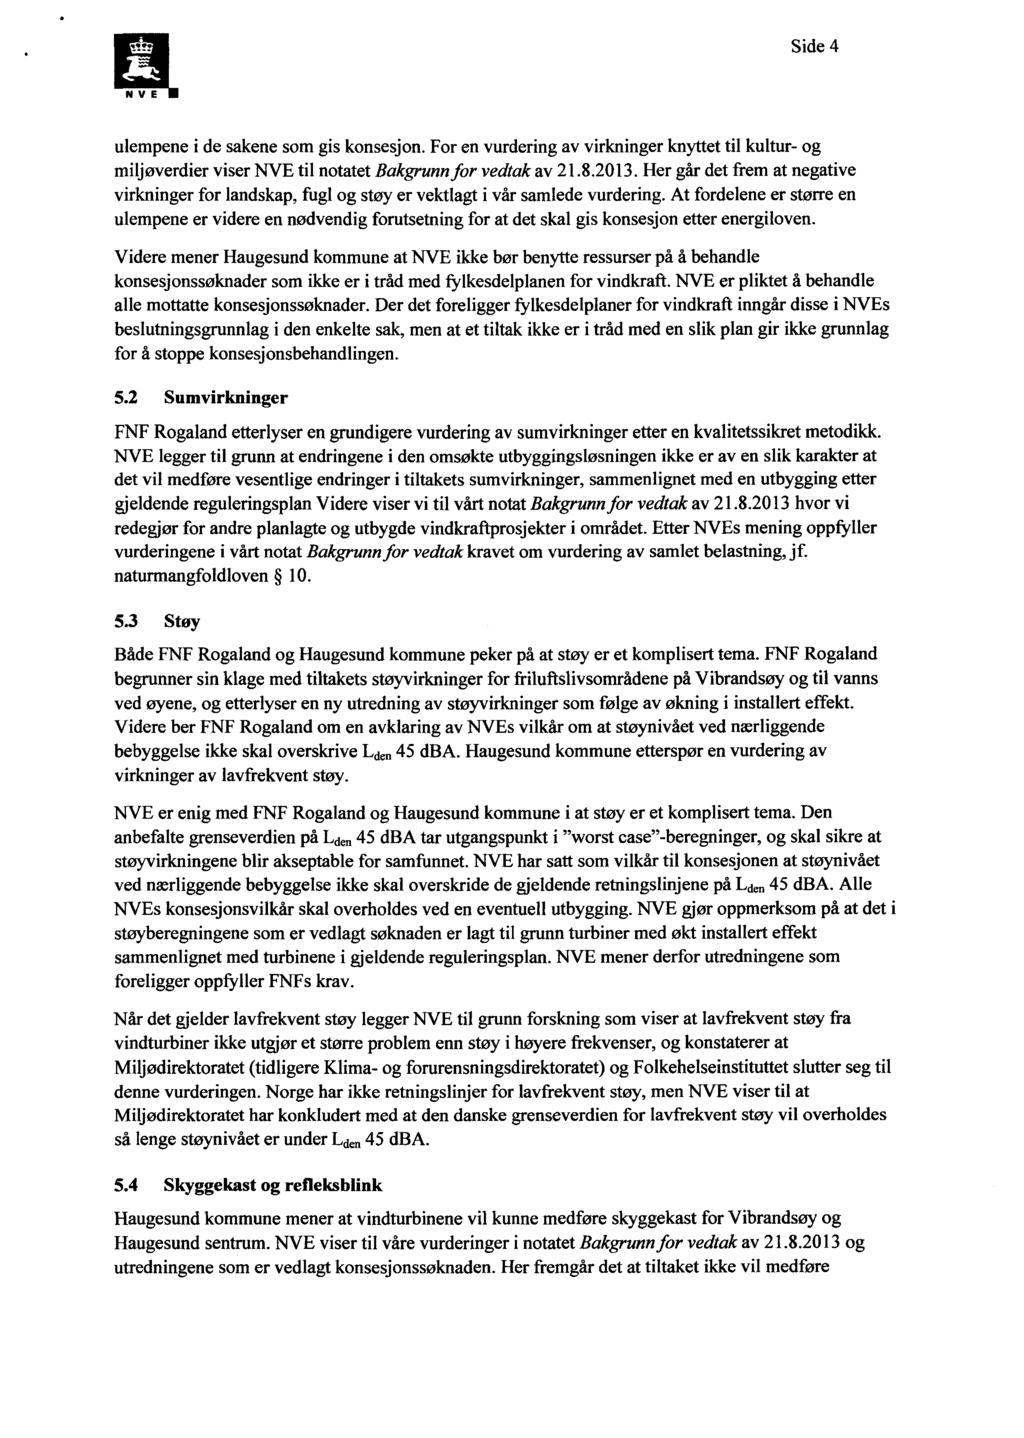 Side 4 ulempene i de sakene som gis konsesjon. For en vurdering av virkninger knyttet til kultur- og miljøverdier viser NVE til notatet Bakgrunnfor vedtak av 21.8.2013.